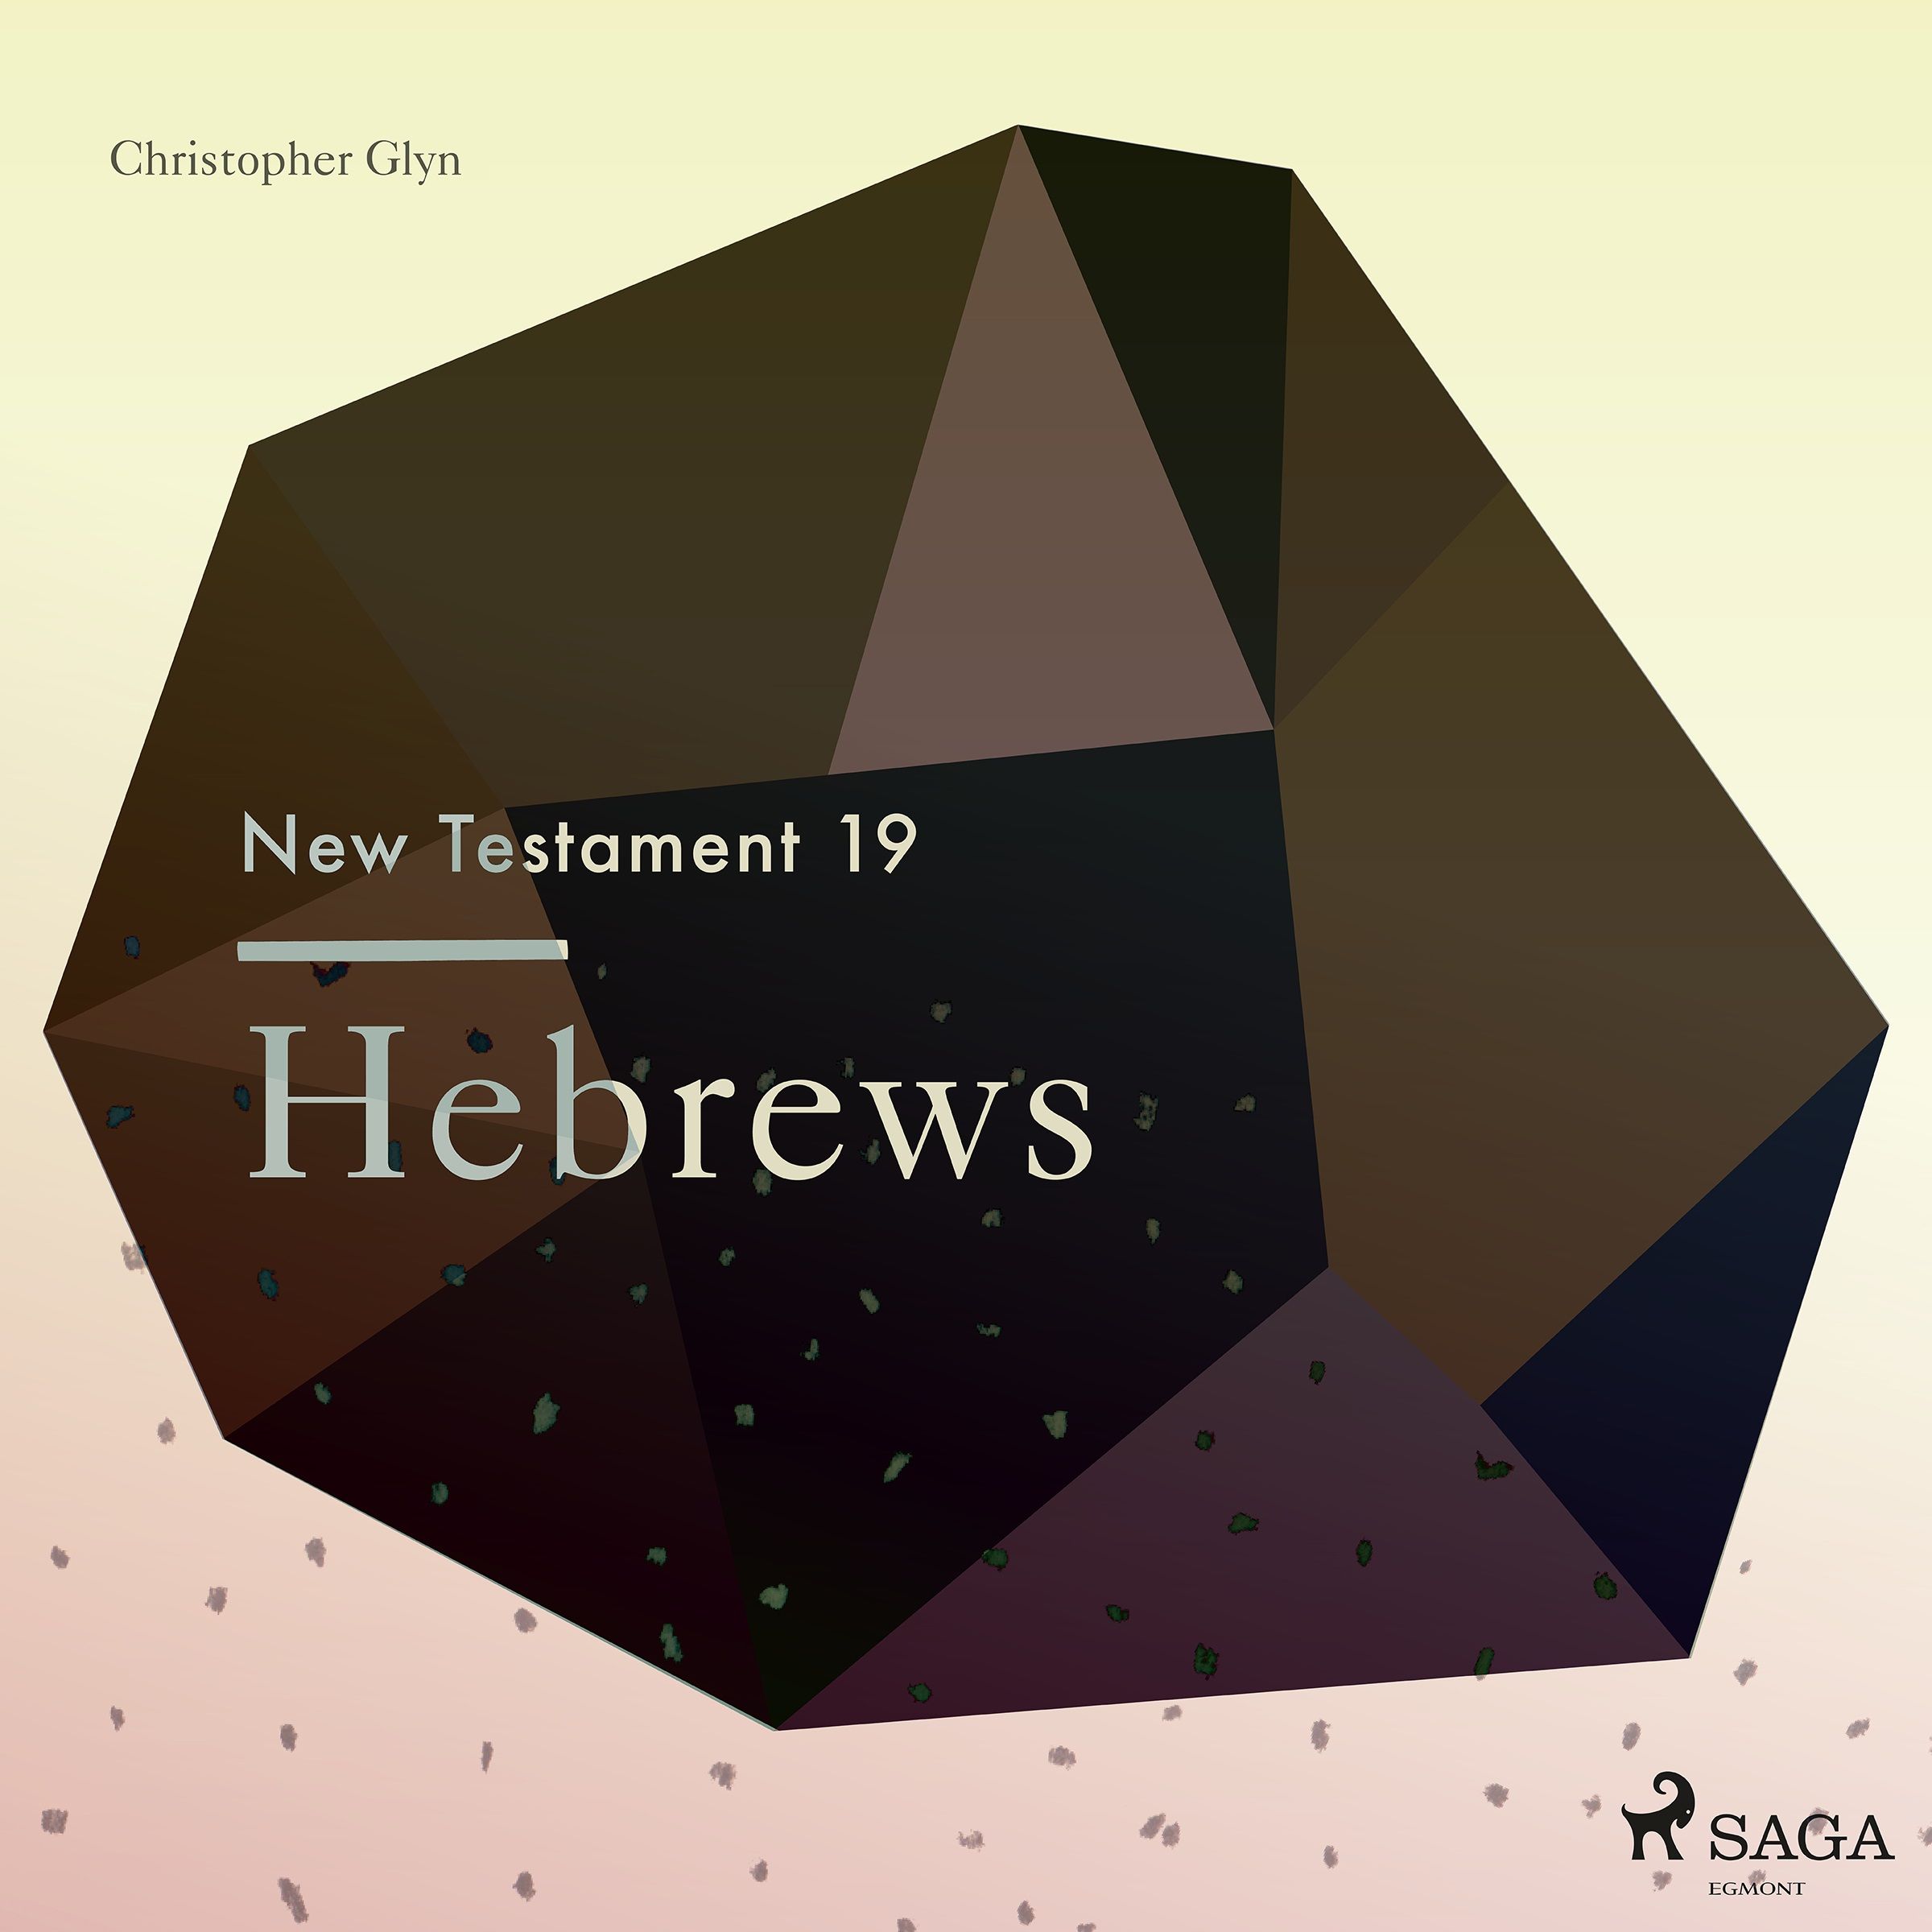 The New Testament 19 - Hebrews, ljudbok av Christopher Glyn